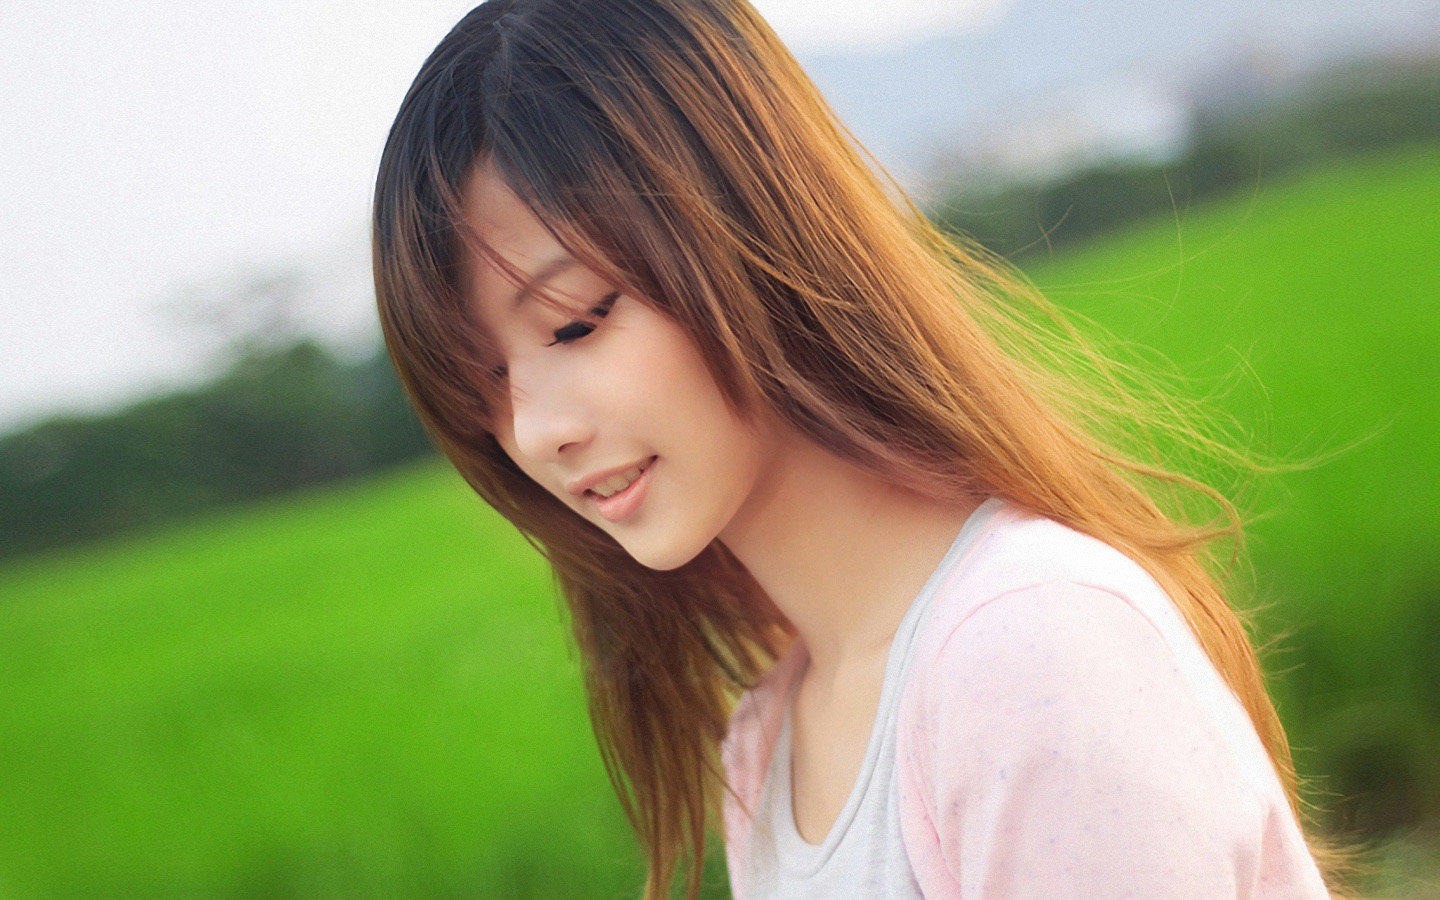 People 1440x900 women model Asian auburn hair face depth of field